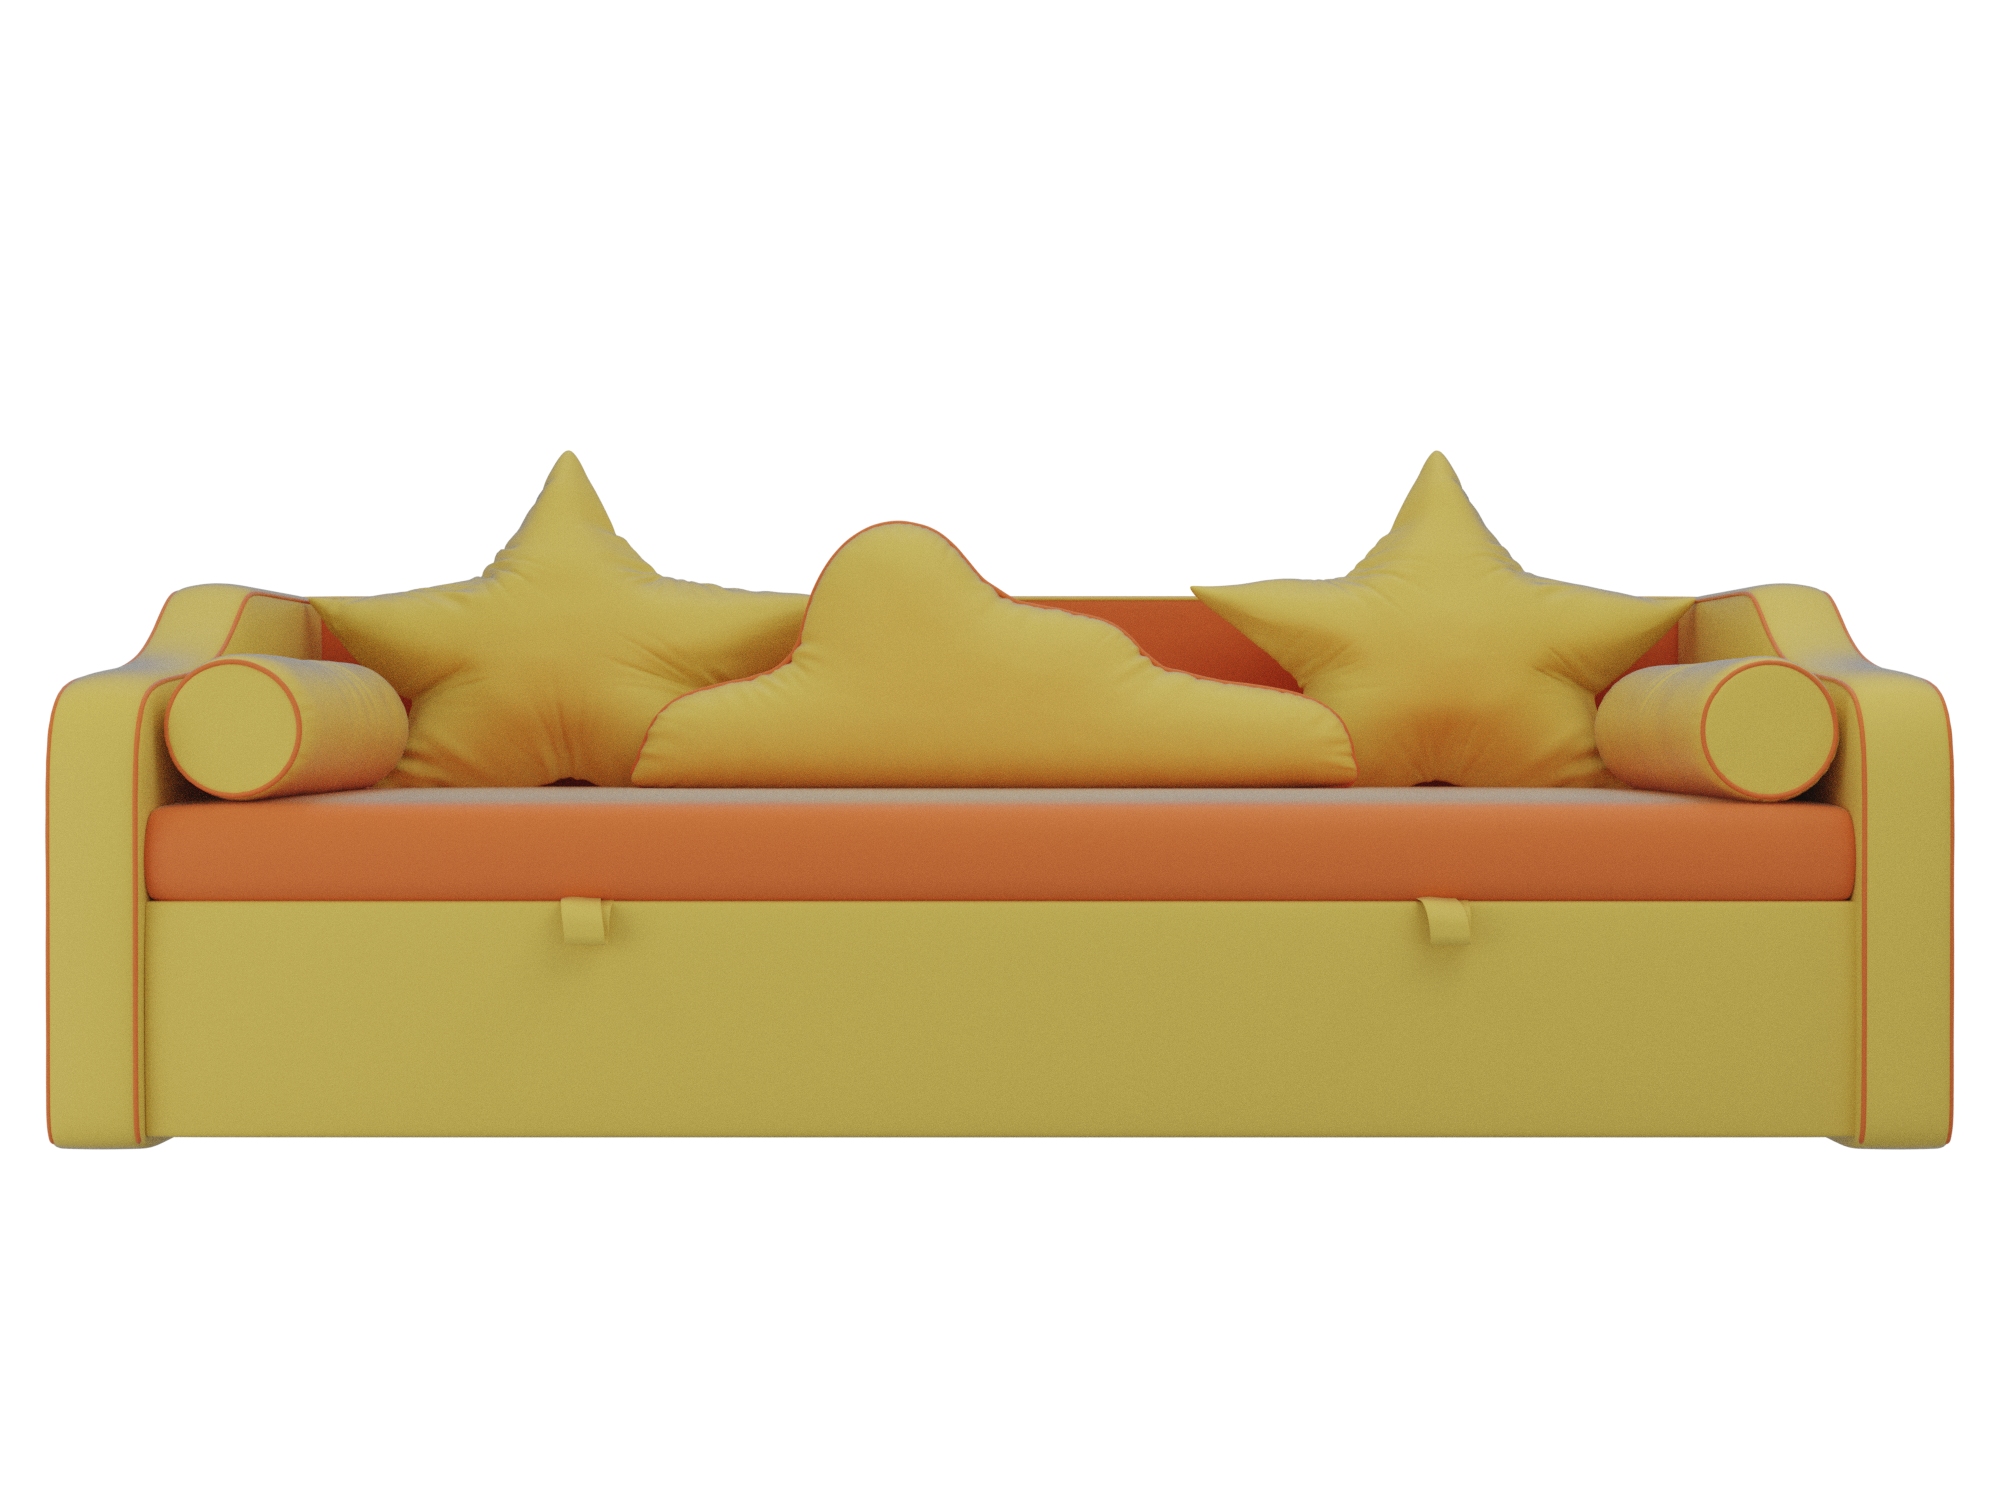 детский диван кровать рико mebelvia желтый оранжевый экокожа лдсп Детский диван-кровать Рико MebelVia Оранжевый, Желтый, Экокожа, ЛДСП